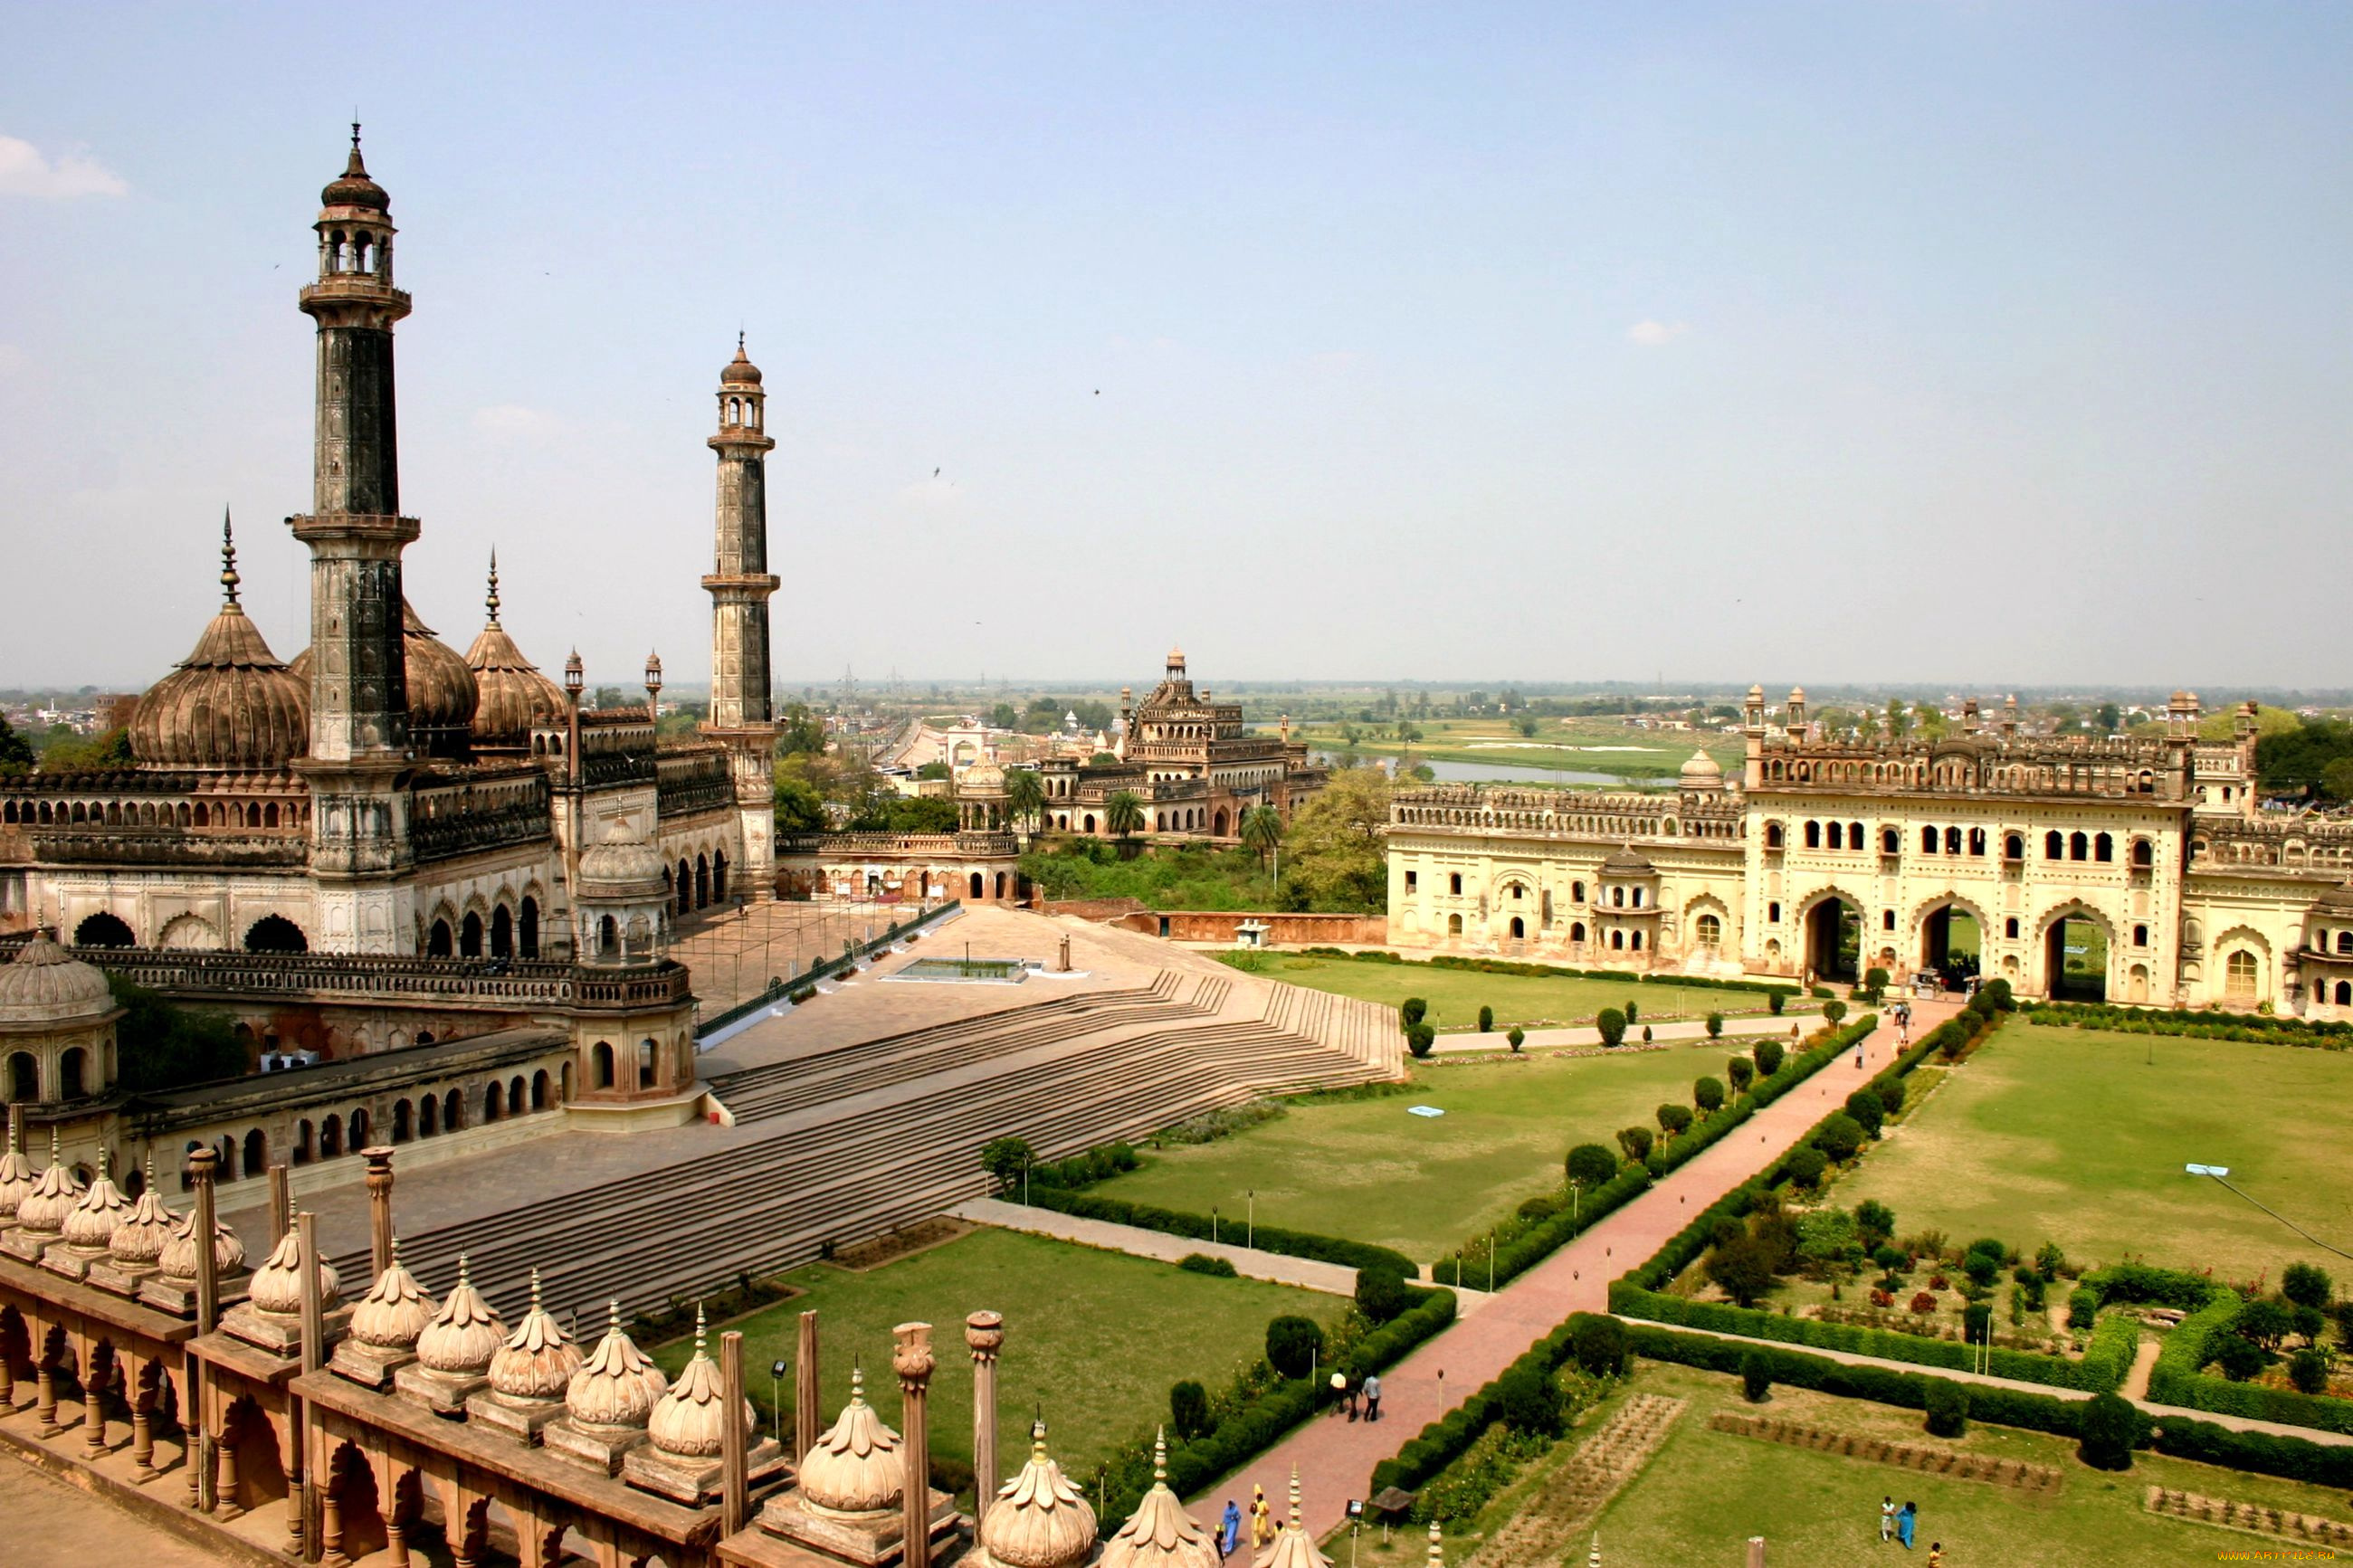 лакхнау, индия, города, мечети, медресе, лестница, дорожки, минареты, мечеть